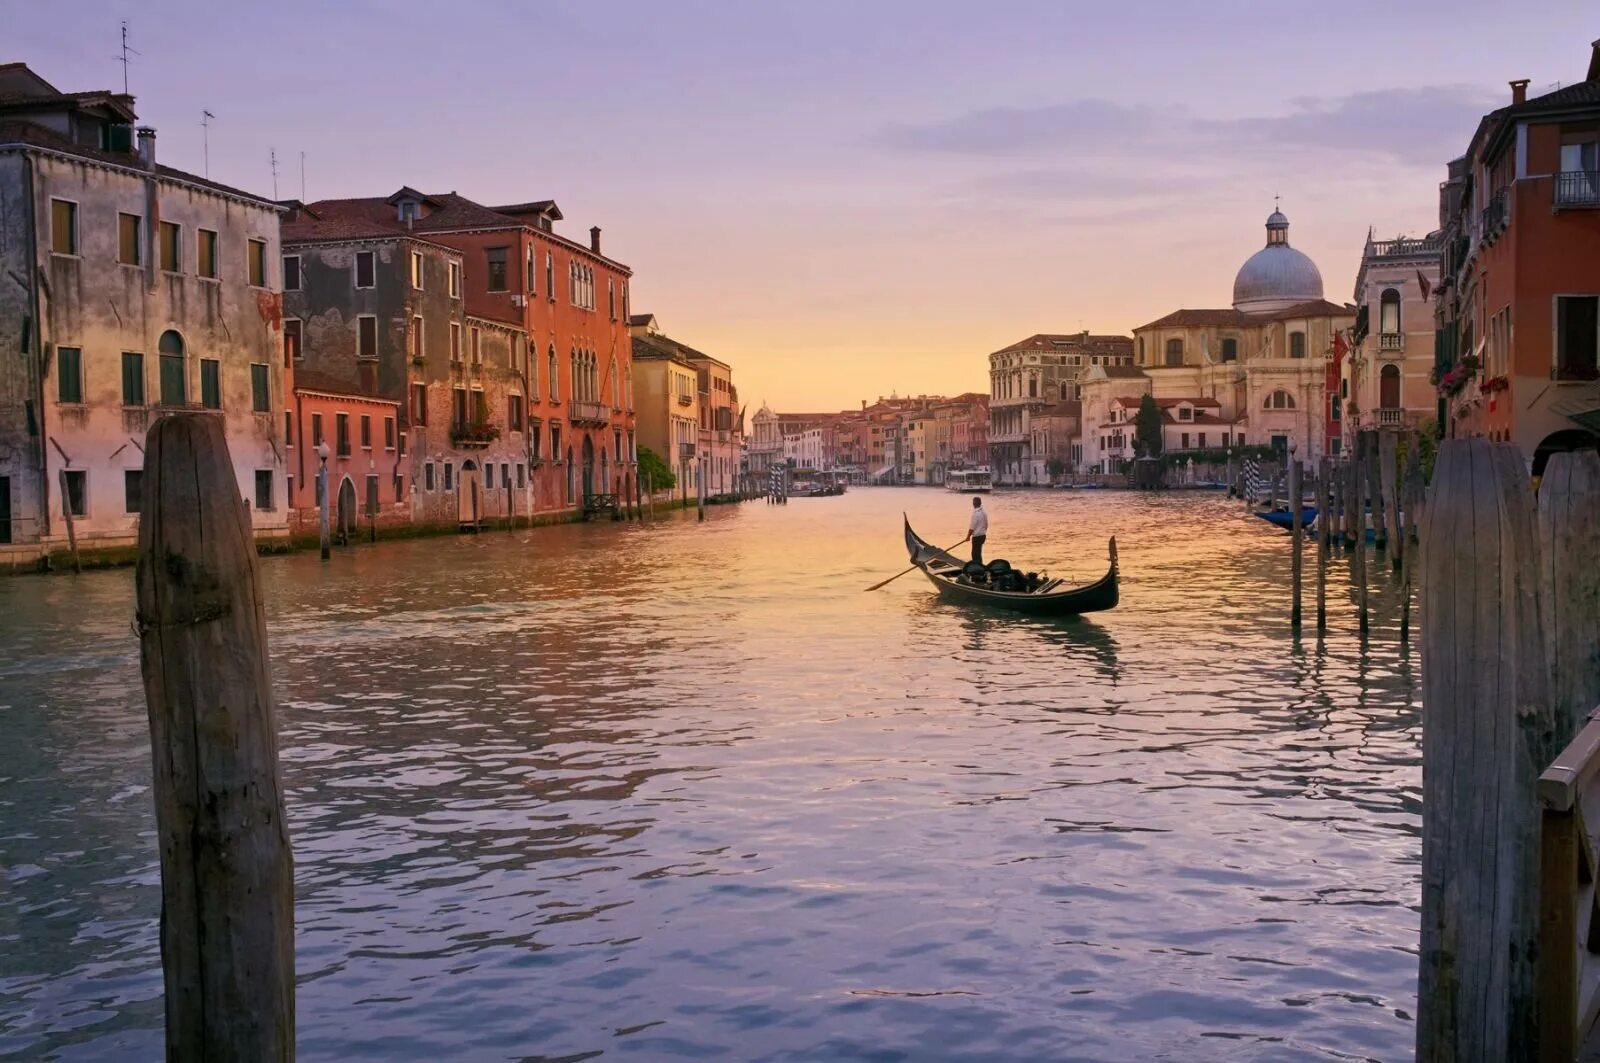 Река в венеции. Италия гондольеры. Италия Венеция гондолы. Венеция каналы гондолы. Гранд канал Италия гондолы.